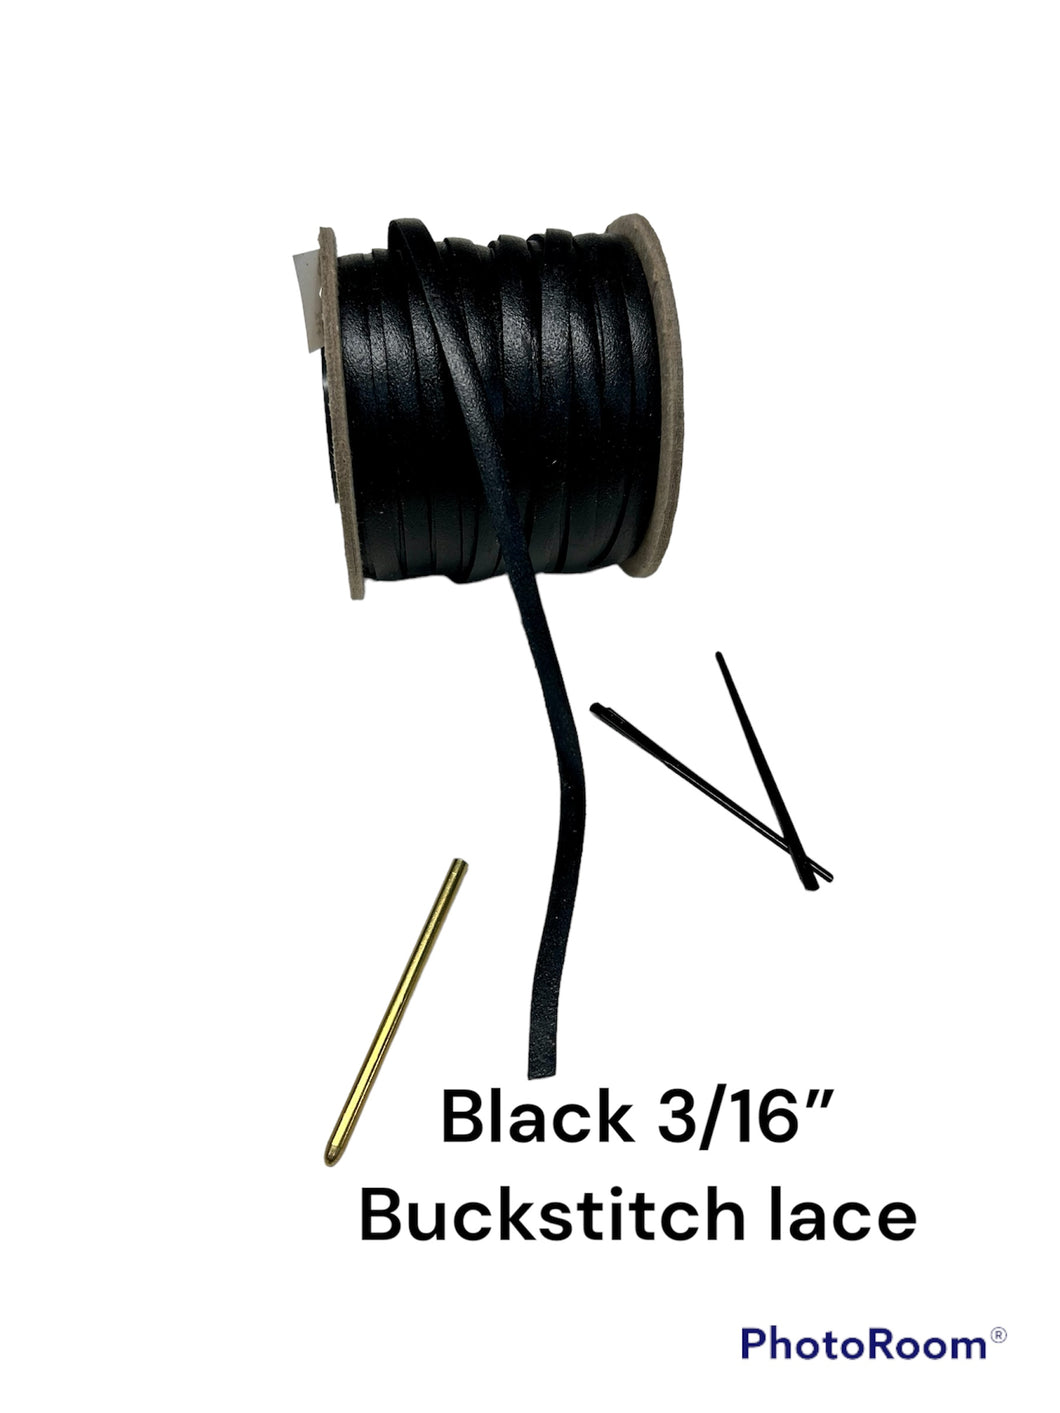 Black 3/16” Buckstitch lace